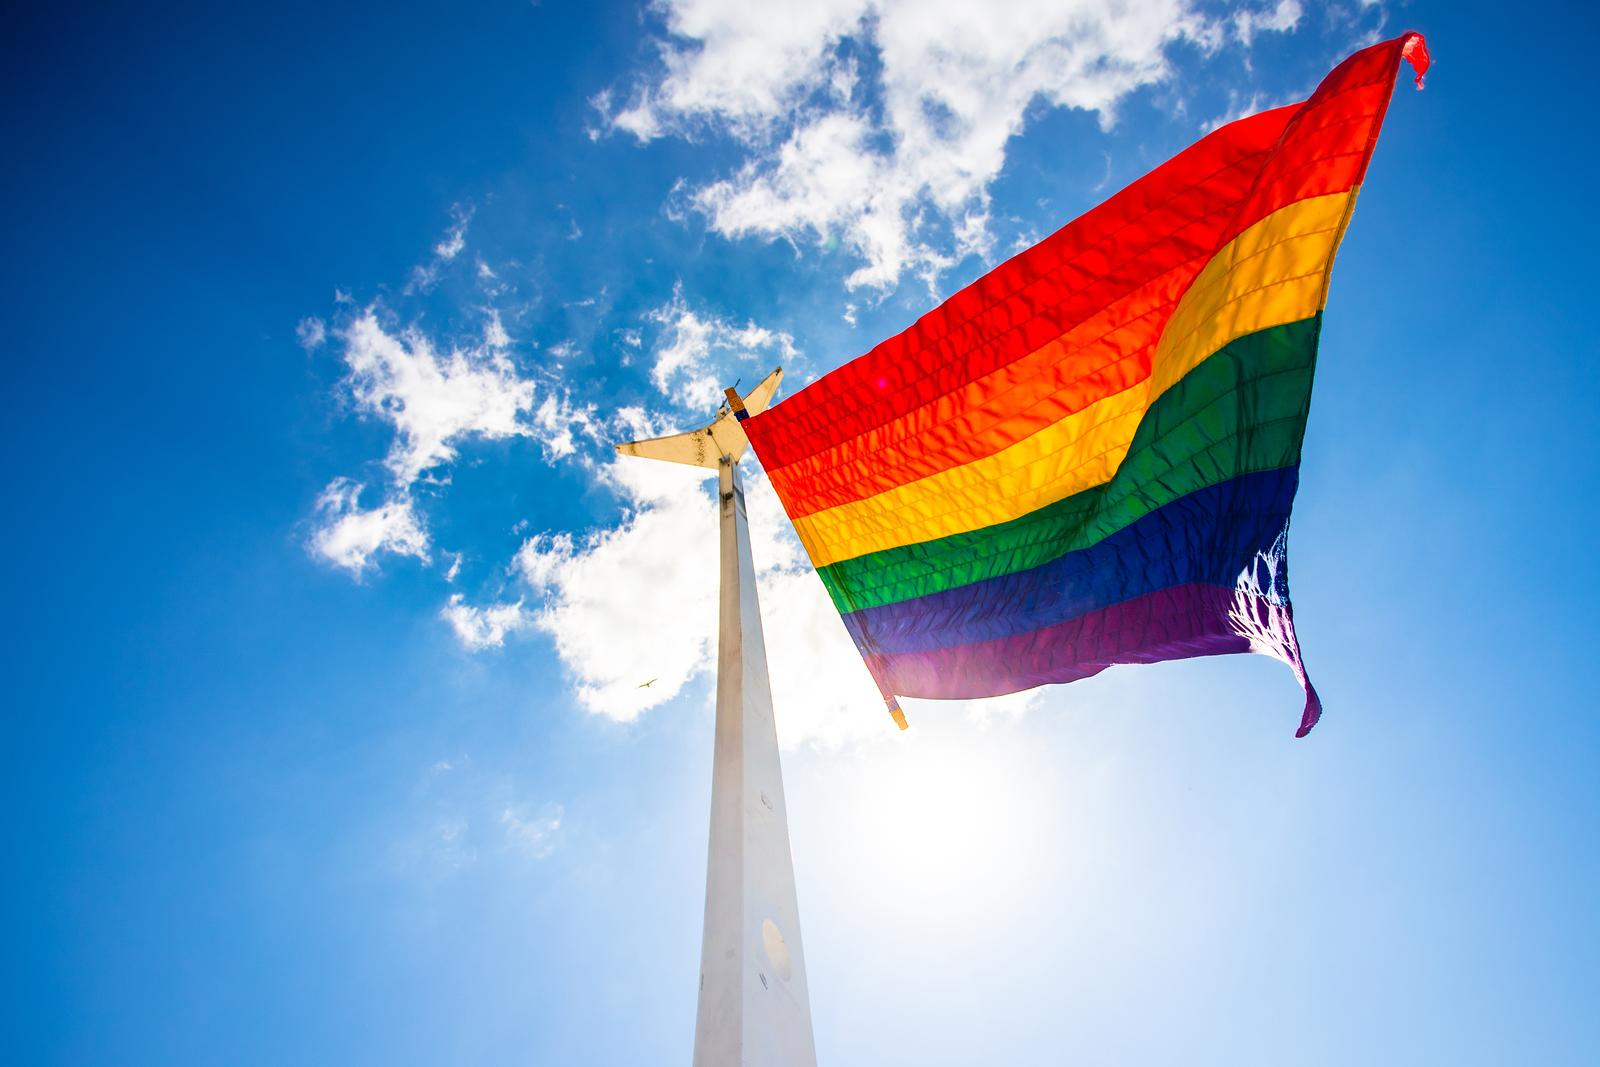 14.06.2021., Split - Pripadnici LGBT zajednice u Splitu jutros su na Matejuski podigli zastavu duginih boja.rPhoto: Milan Sabic/PIXSELL